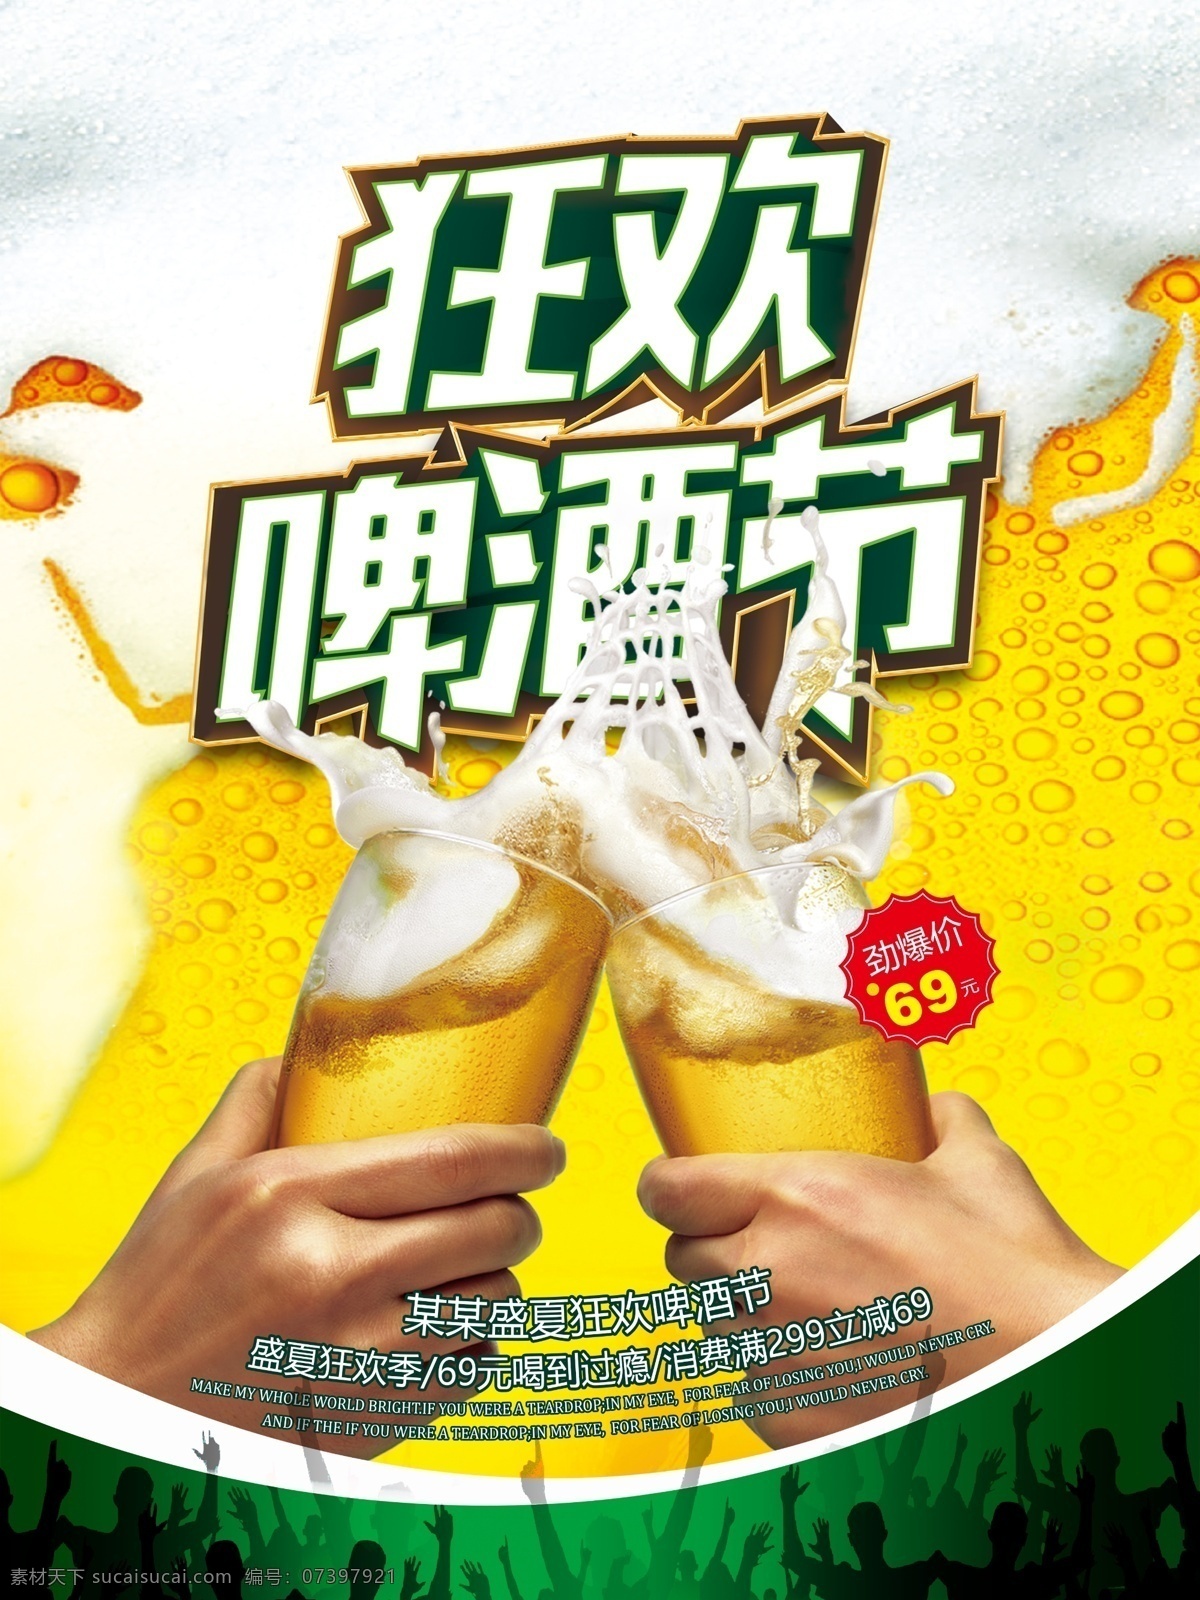 盛夏 狂欢 啤酒节 活动 促销 宣传海报 夏日 啤酒之夜 啤酒 扎啤 啤酒海报 啤酒广告 啤酒素材 哈啤一夏 狂欢啤酒节 宣传 海报